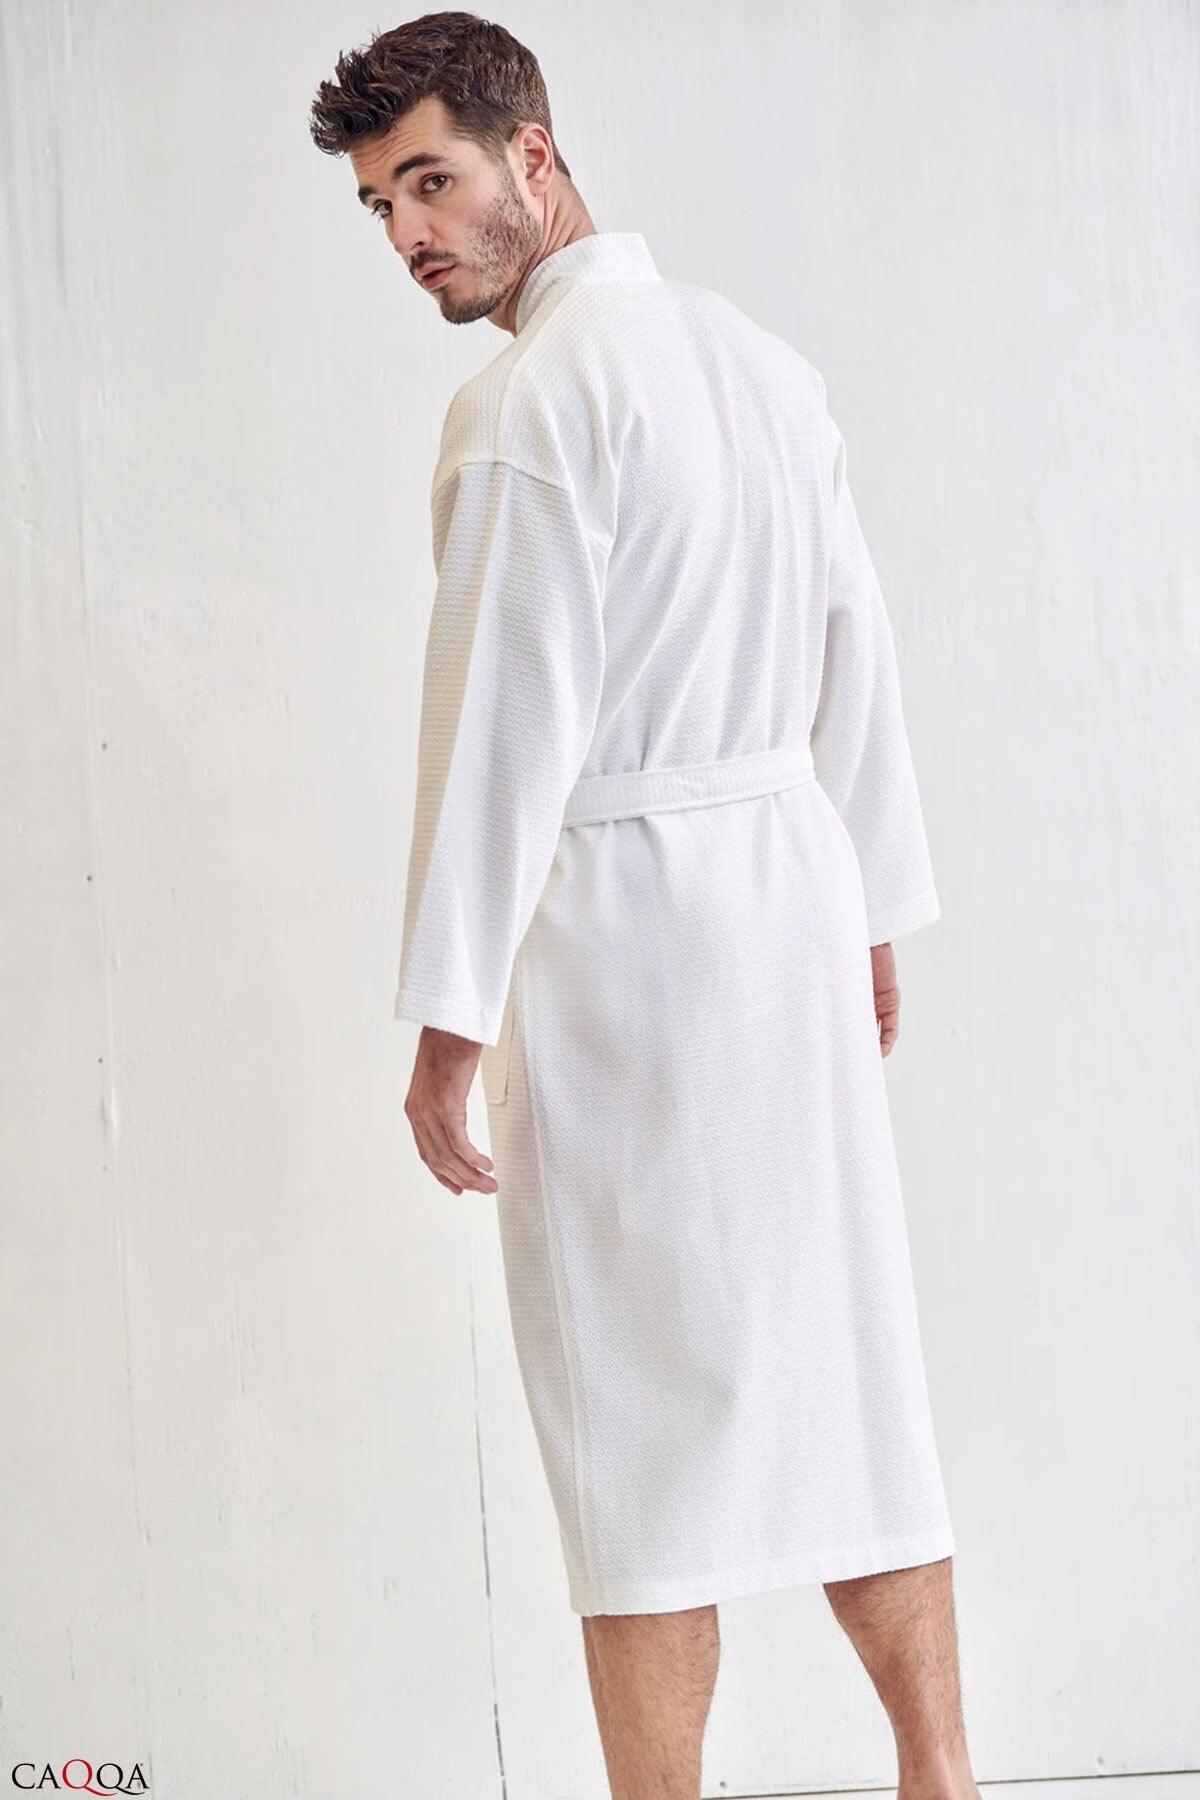 Men's White Cotton 4-Season Pique Dressing Gown and Bathrobe - Swordslife